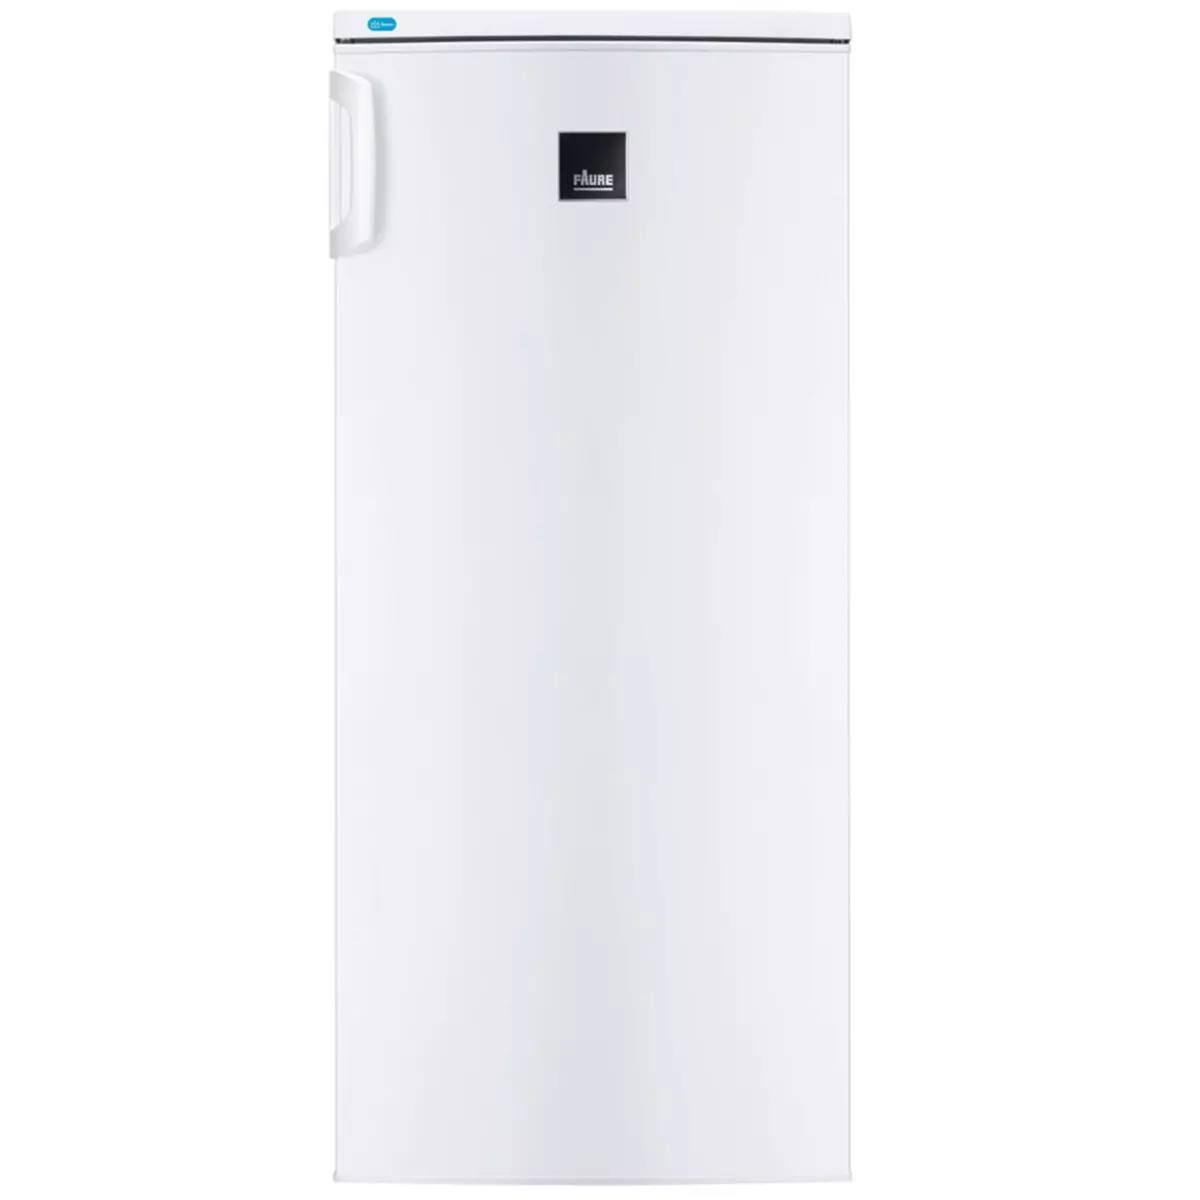 FAURE Réfrigérateur Armoire FRA22700WE - 232 L, Froid statique